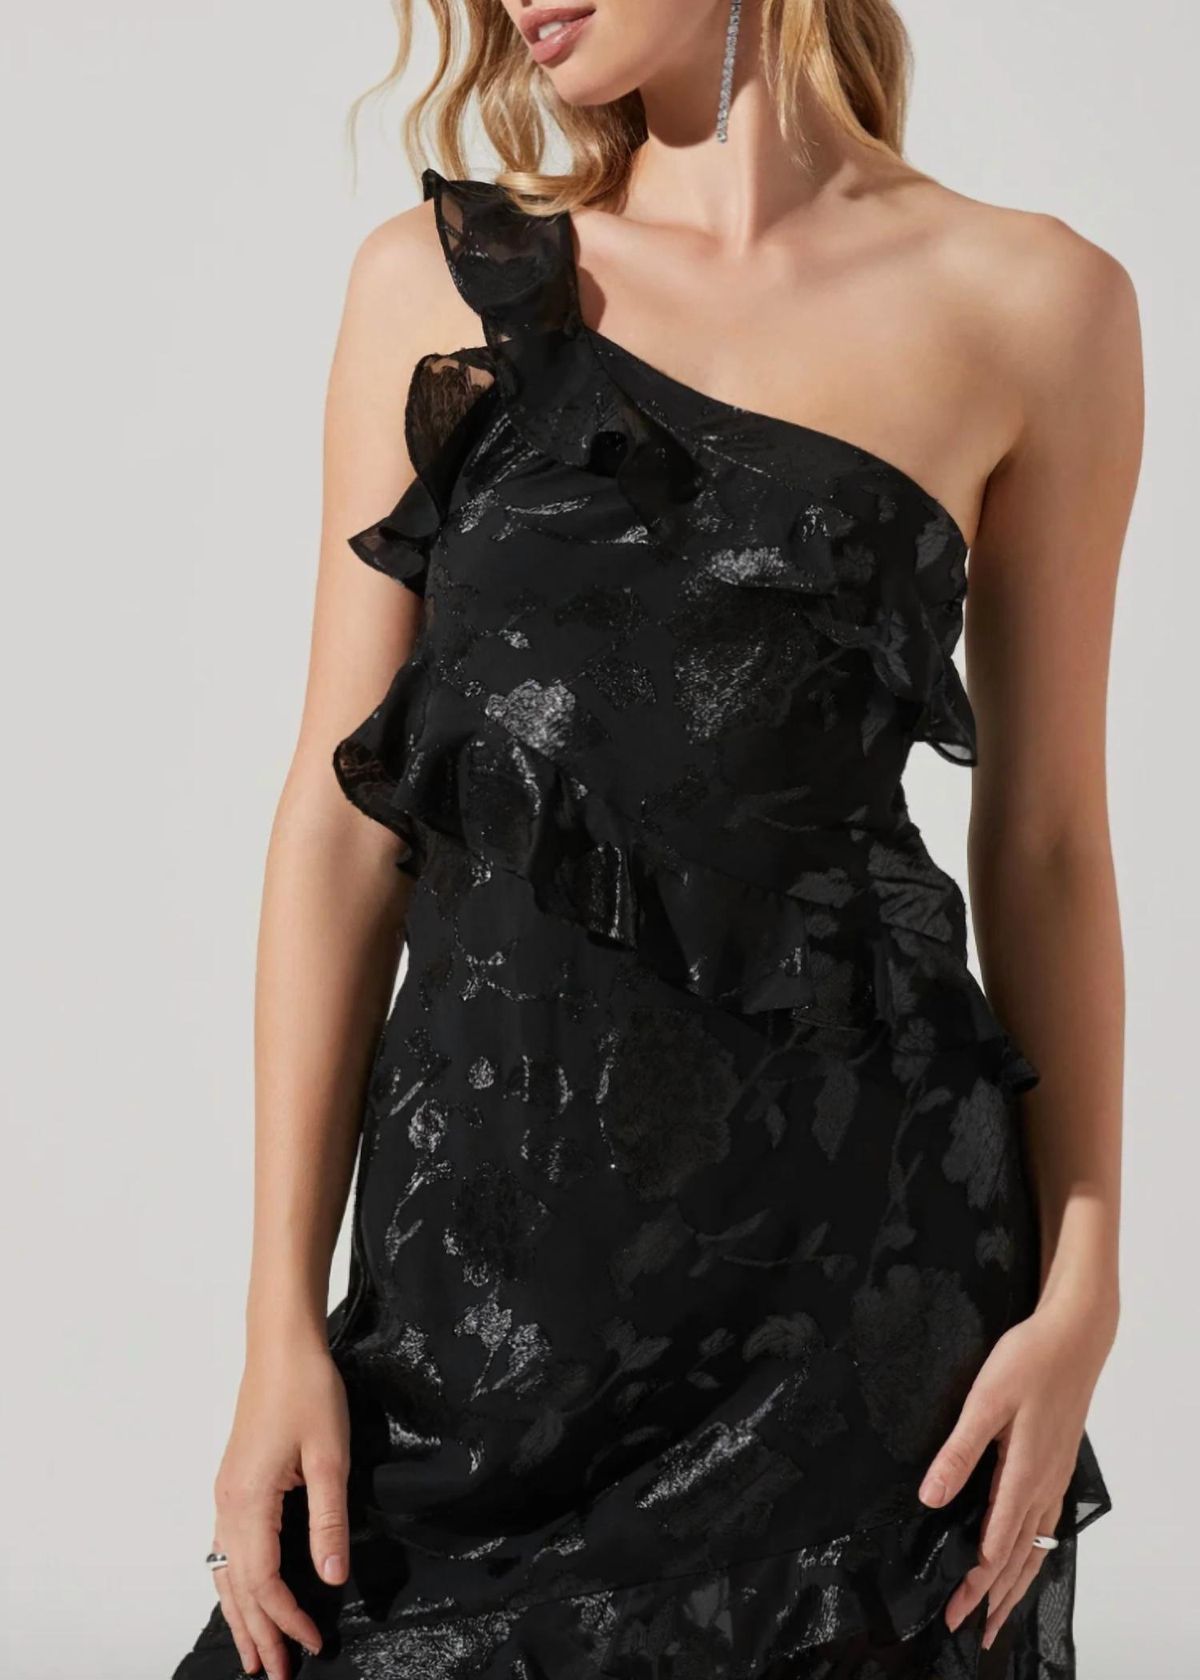 Style 1-3975519864-2901 ASTR Size M Floral Black Side Slit Dress on Queenly